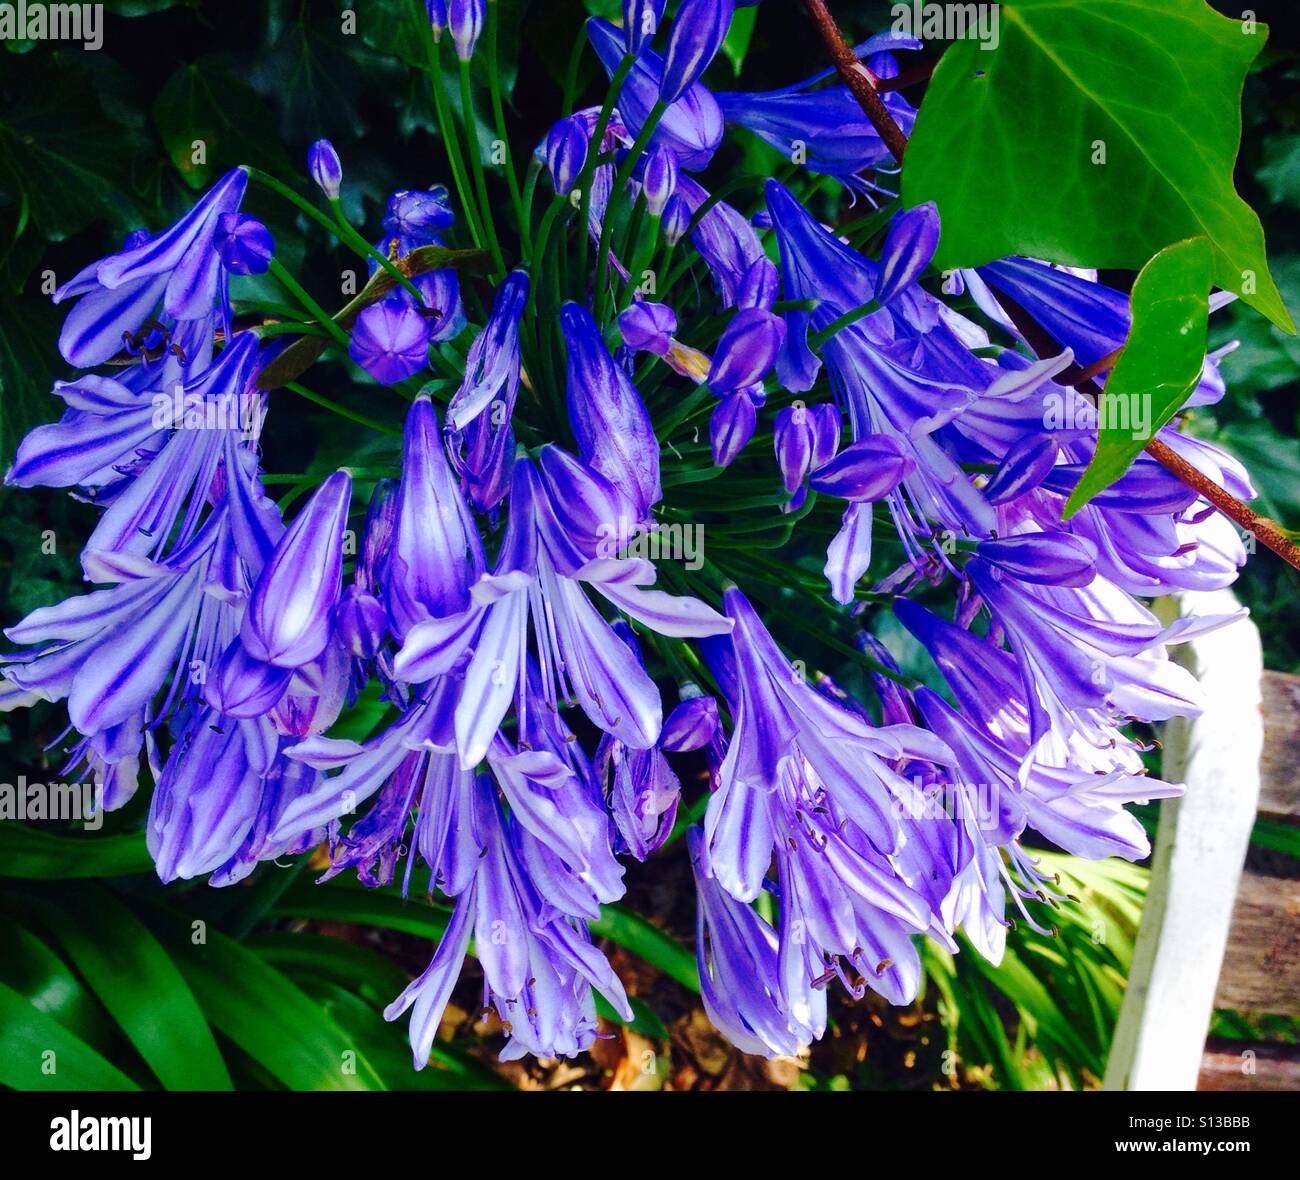 spiralclover purple lily-